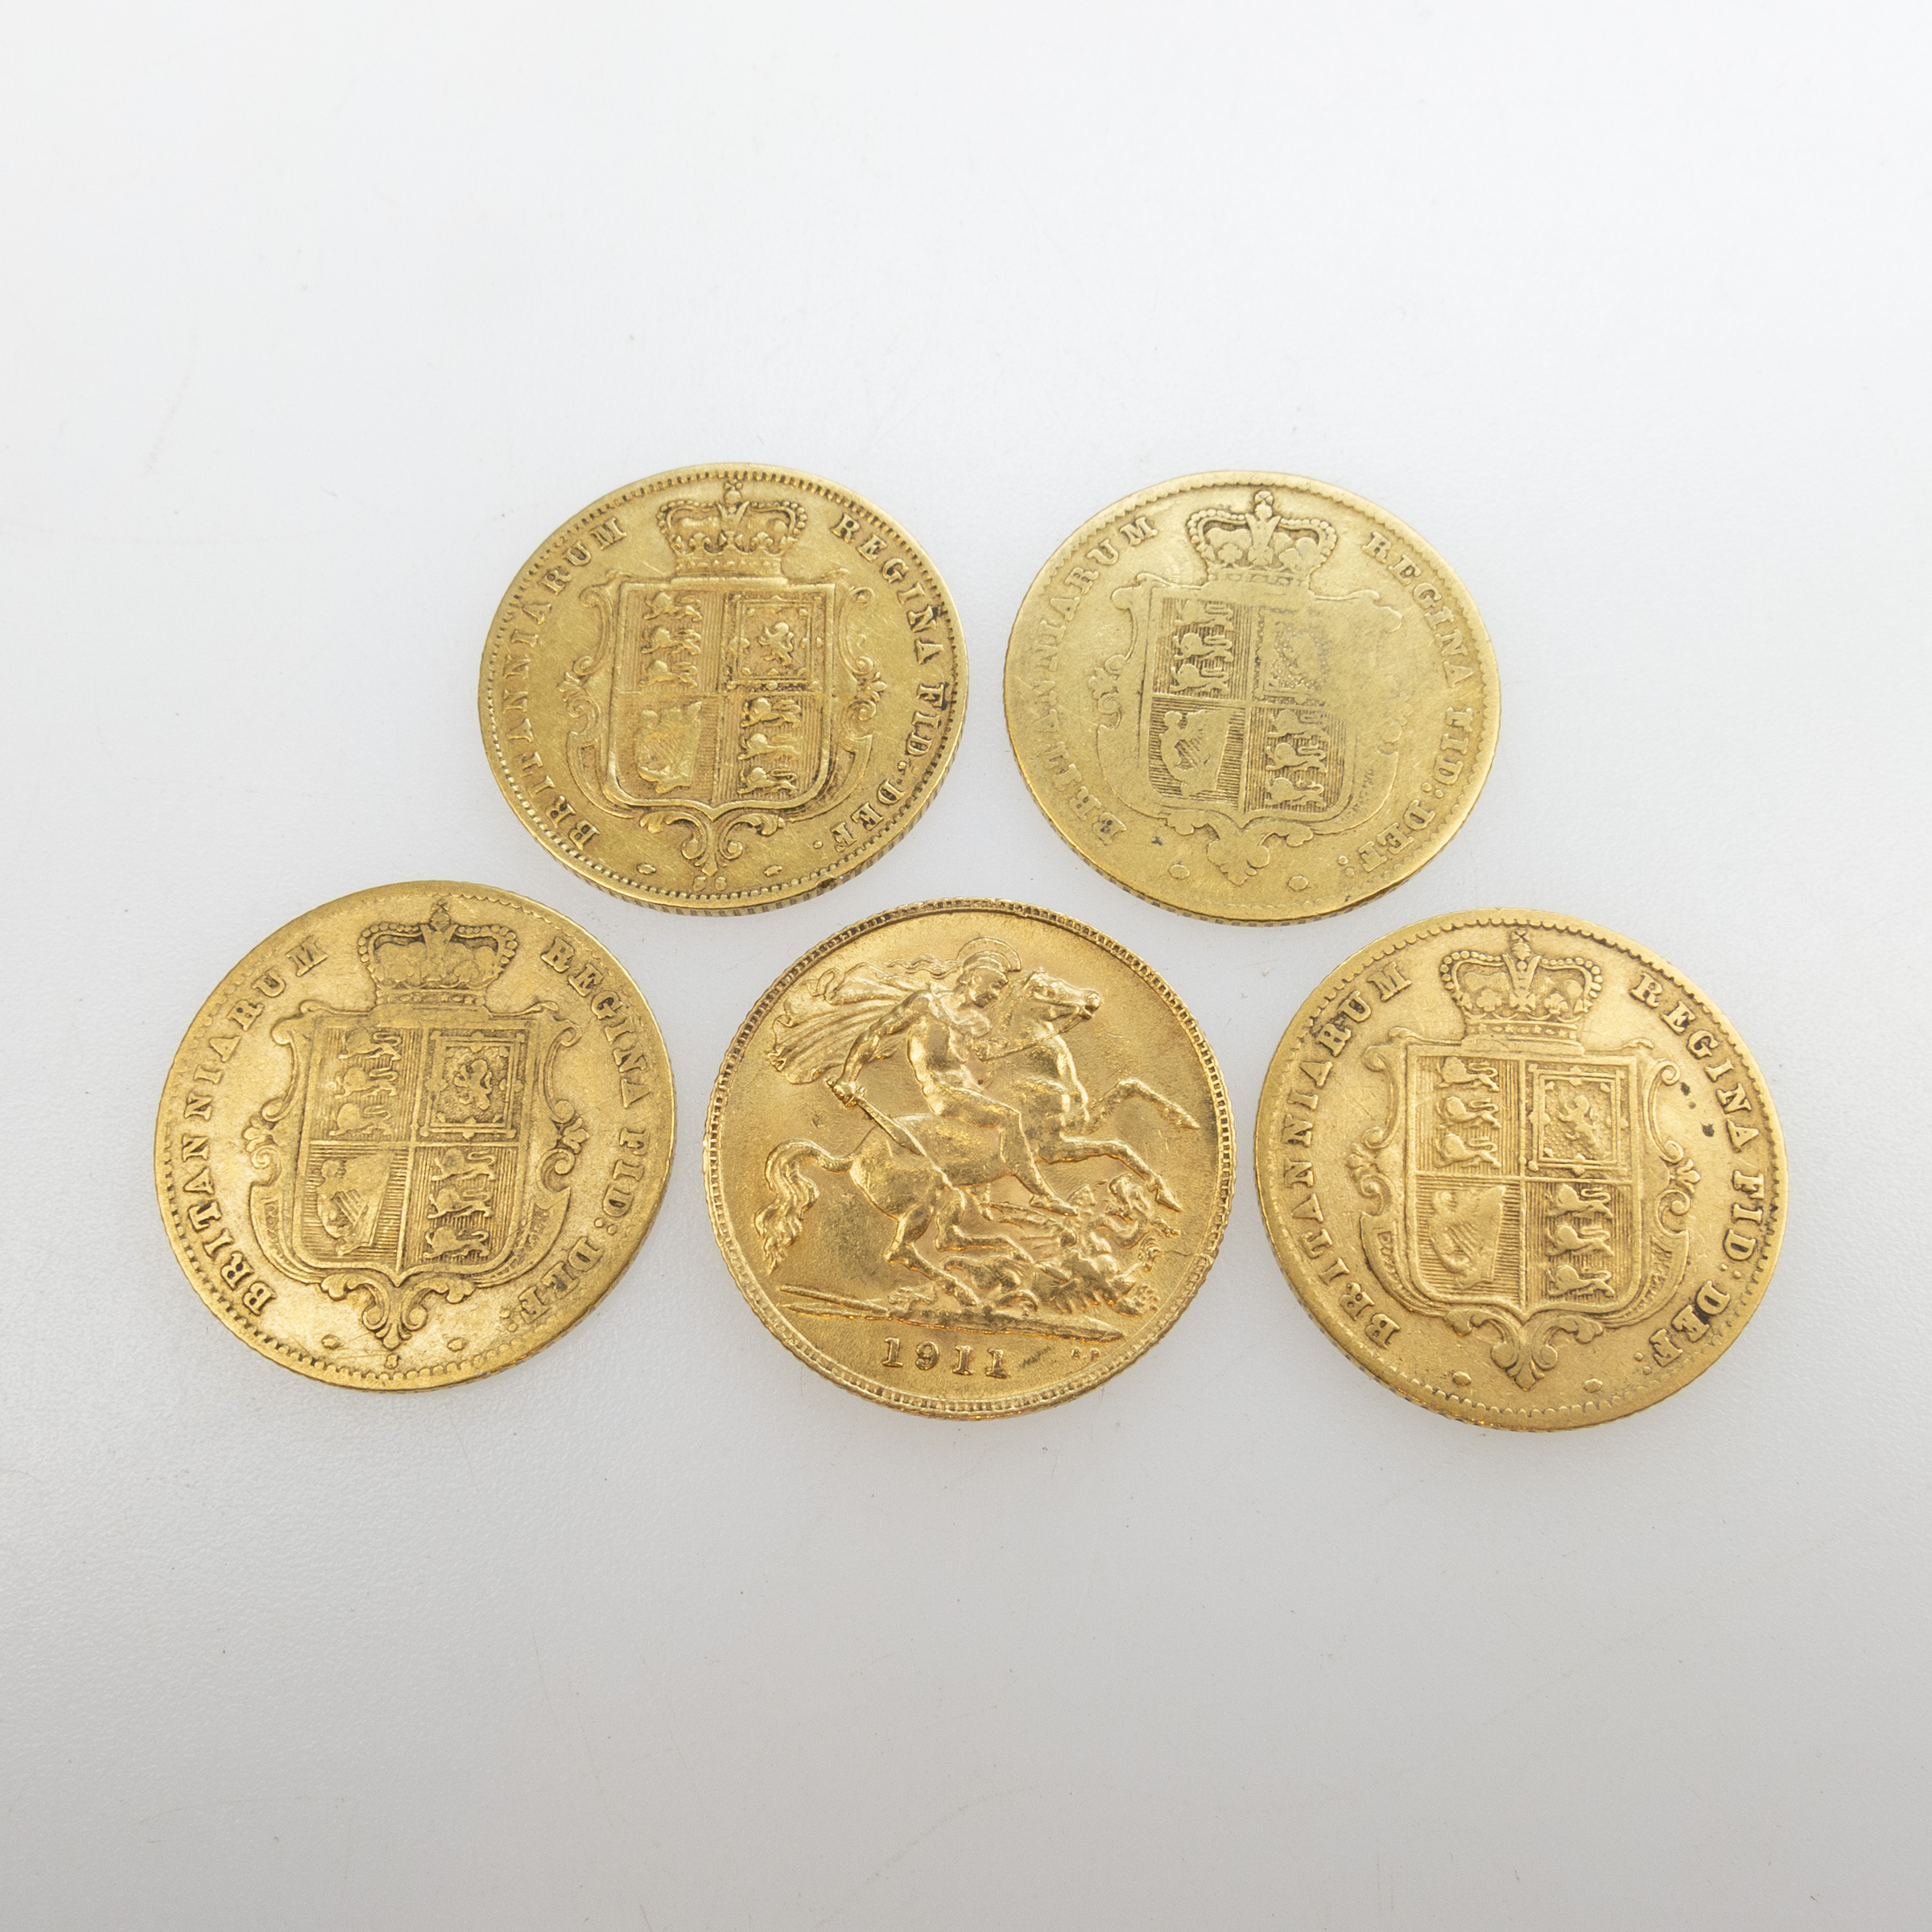 5 British Gold Half Sovereigns